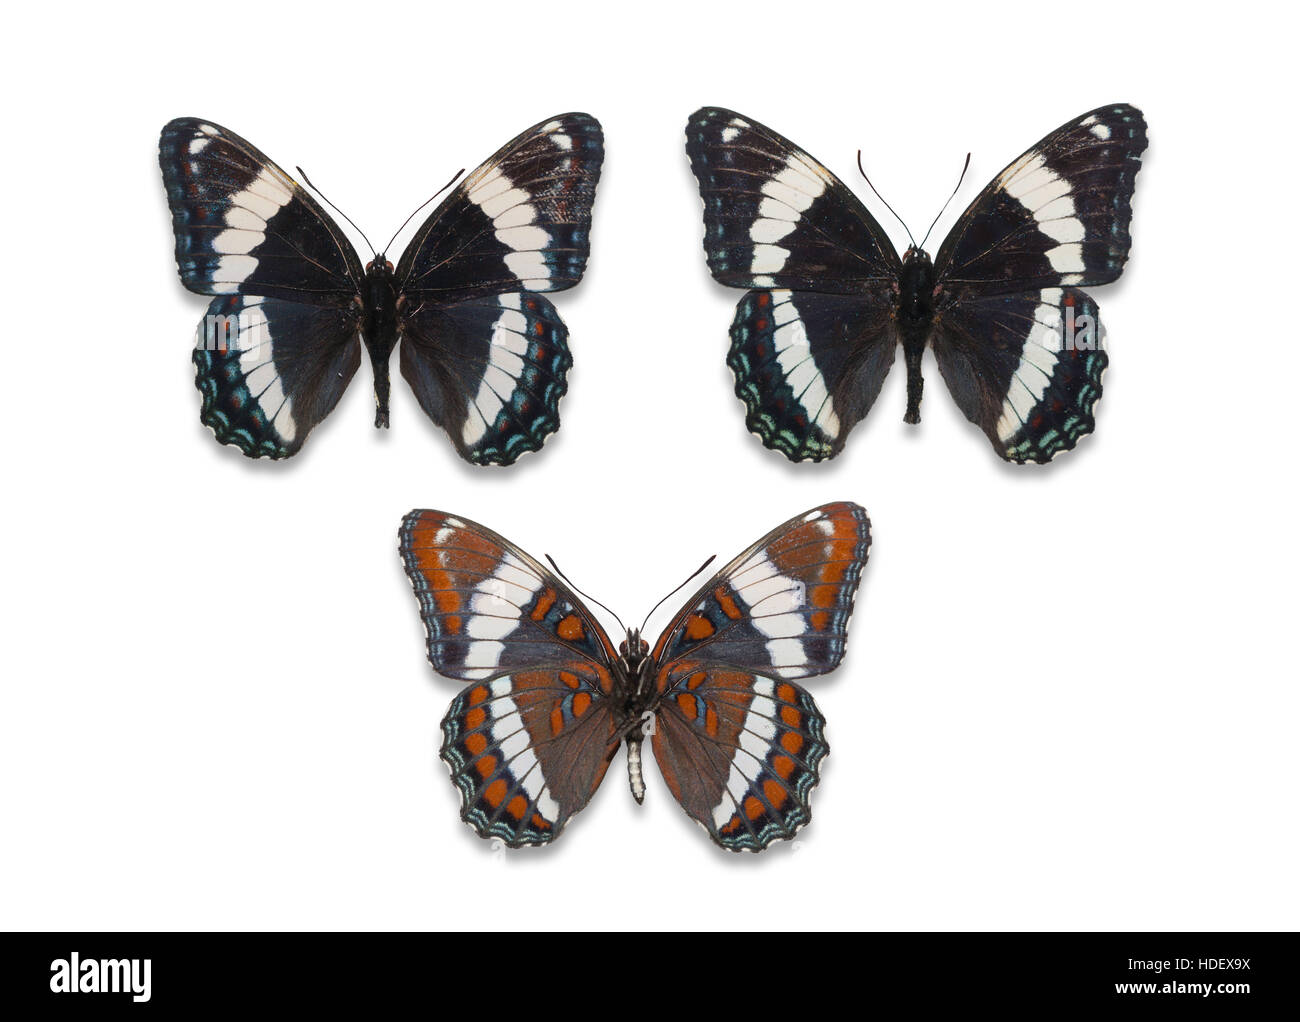 Trois épinglés et découpe de propagation de l'amiral blanc papillons (Limenitis arthemis arthemis), vues dorsale et ventrale Banque D'Images